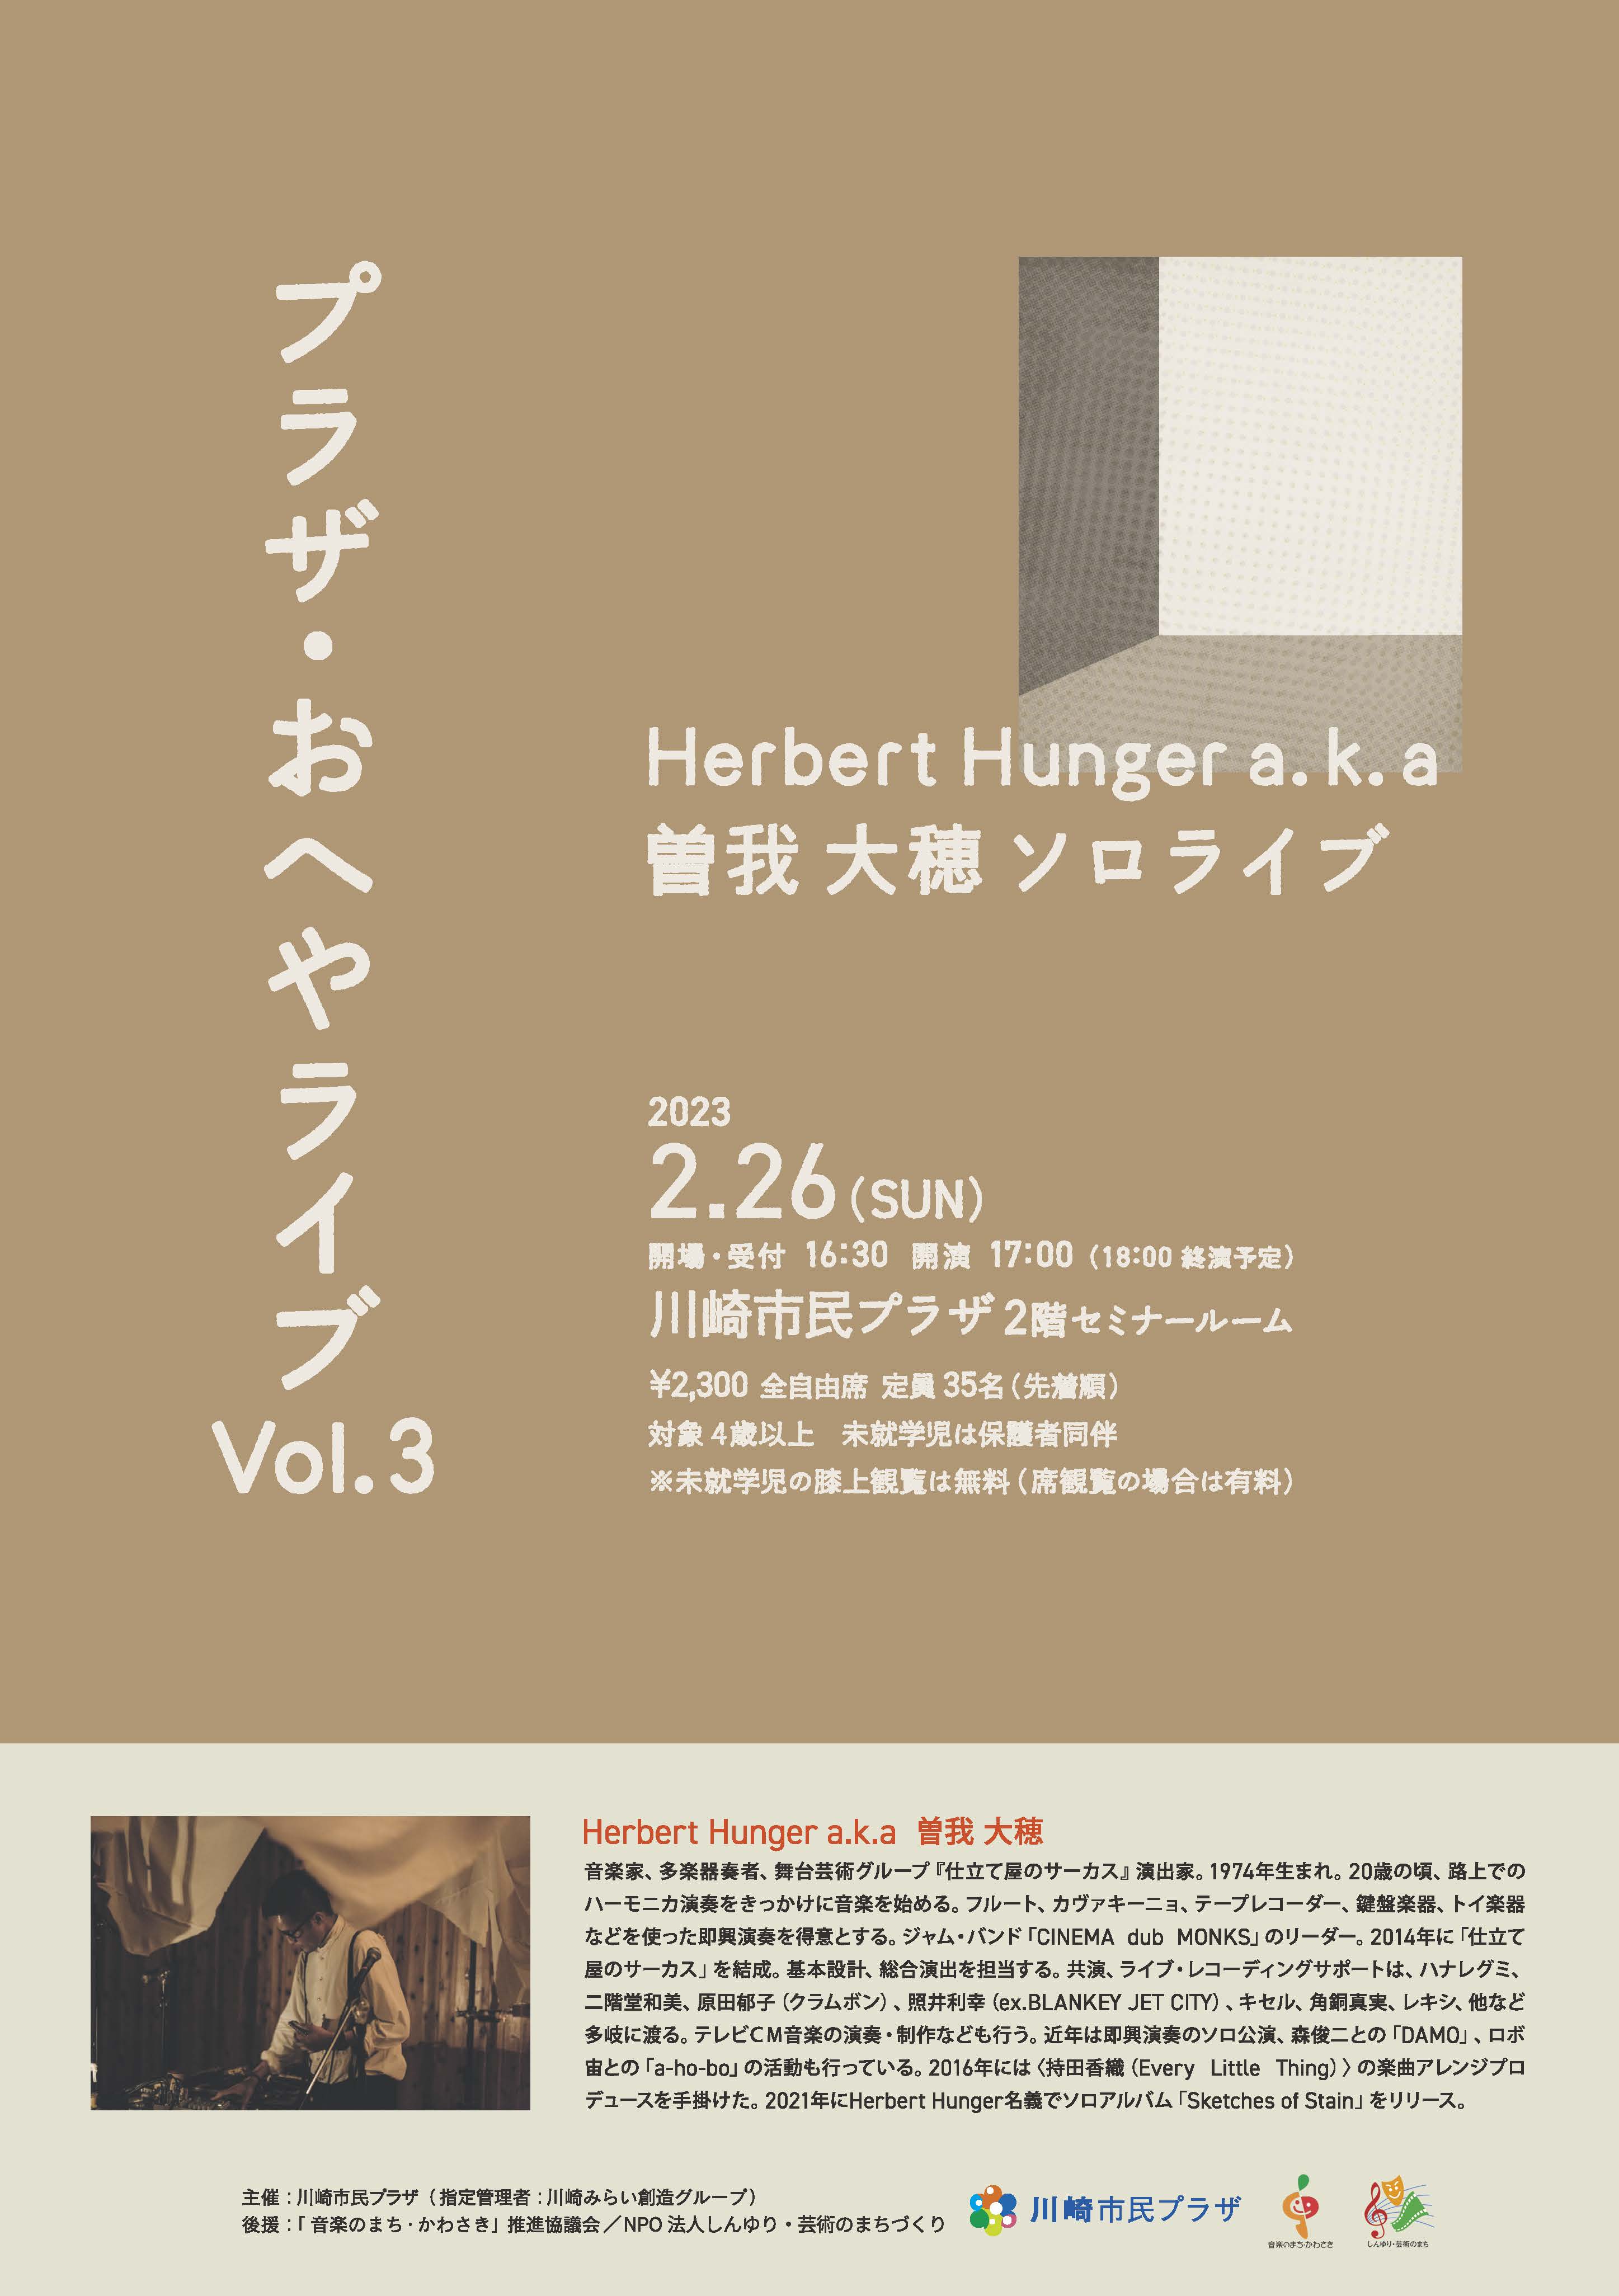 【2023年2月26日】プラザ・おへやライブ Vol.3 ~Herbert Hunger a.k.a曽我大穂 ソロライブ~